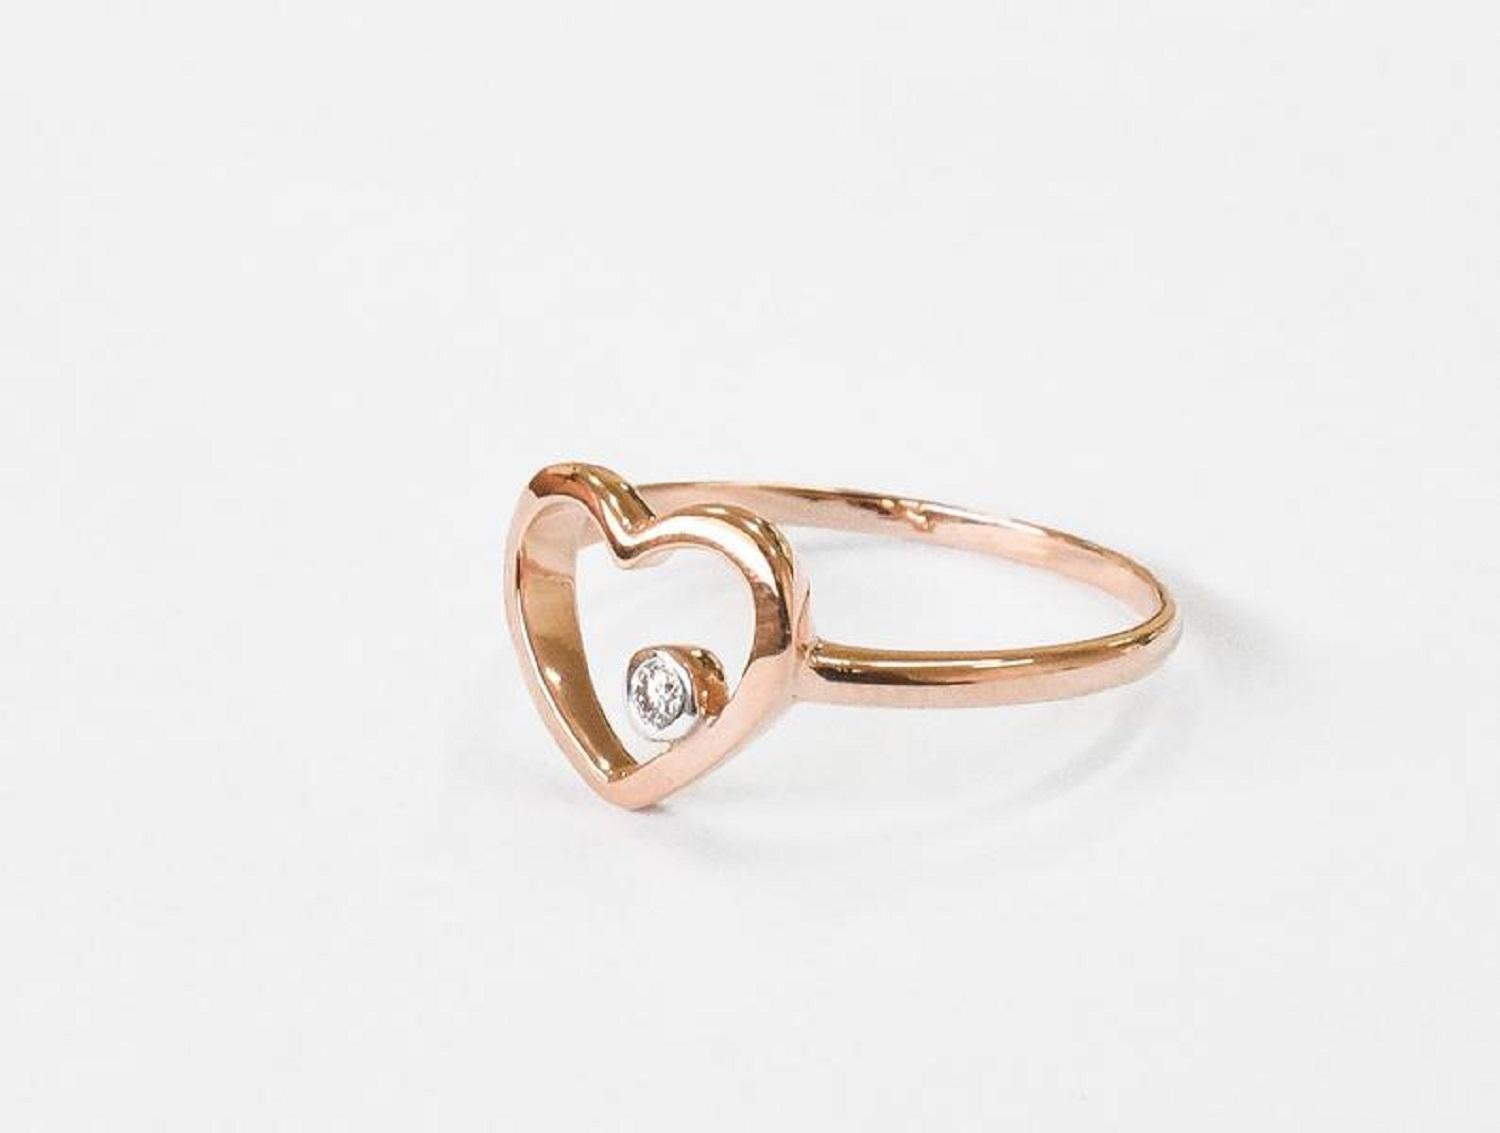 For Sale:  14k Rose Gold Diamond Heart Ring Minimal Heart Ring with Bezel Set Diamond 7